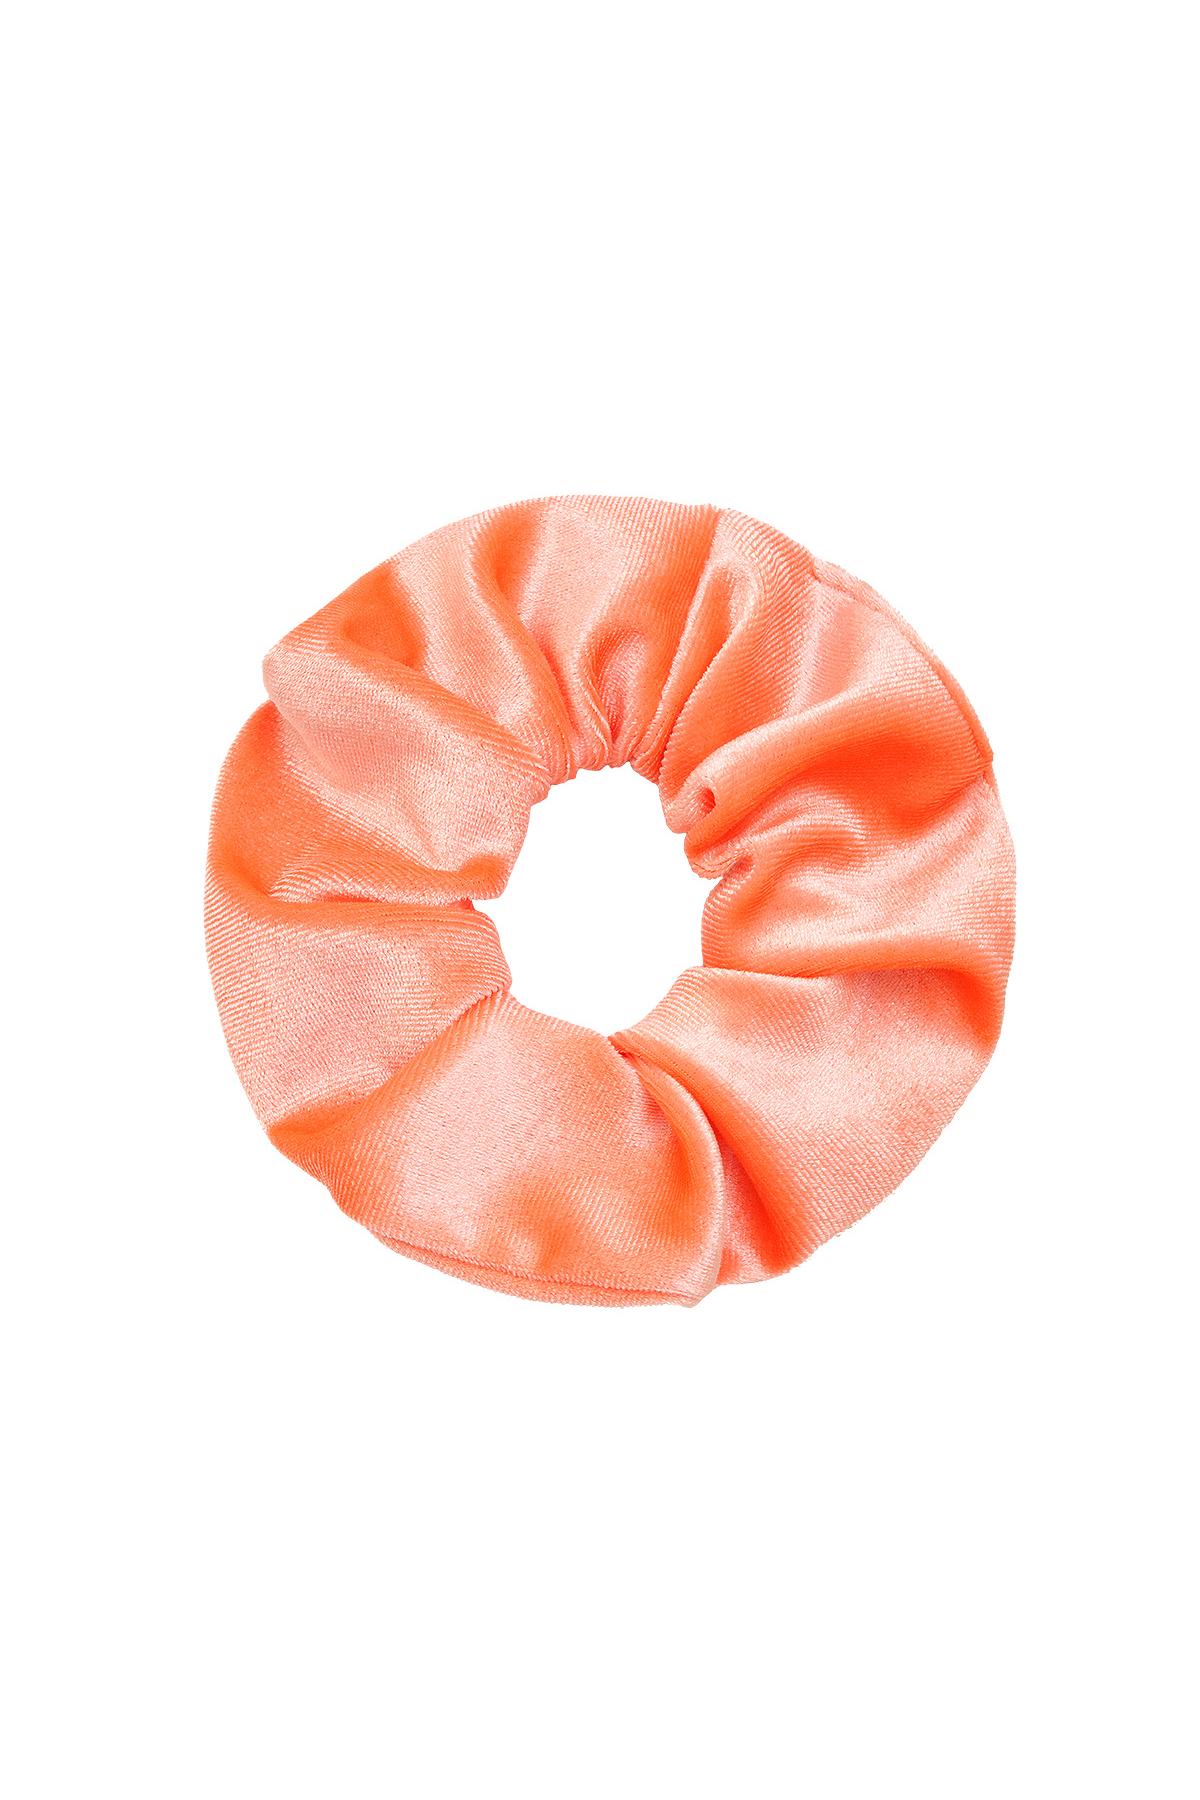 Scrunchie Dolce Velluto Orange Polyester